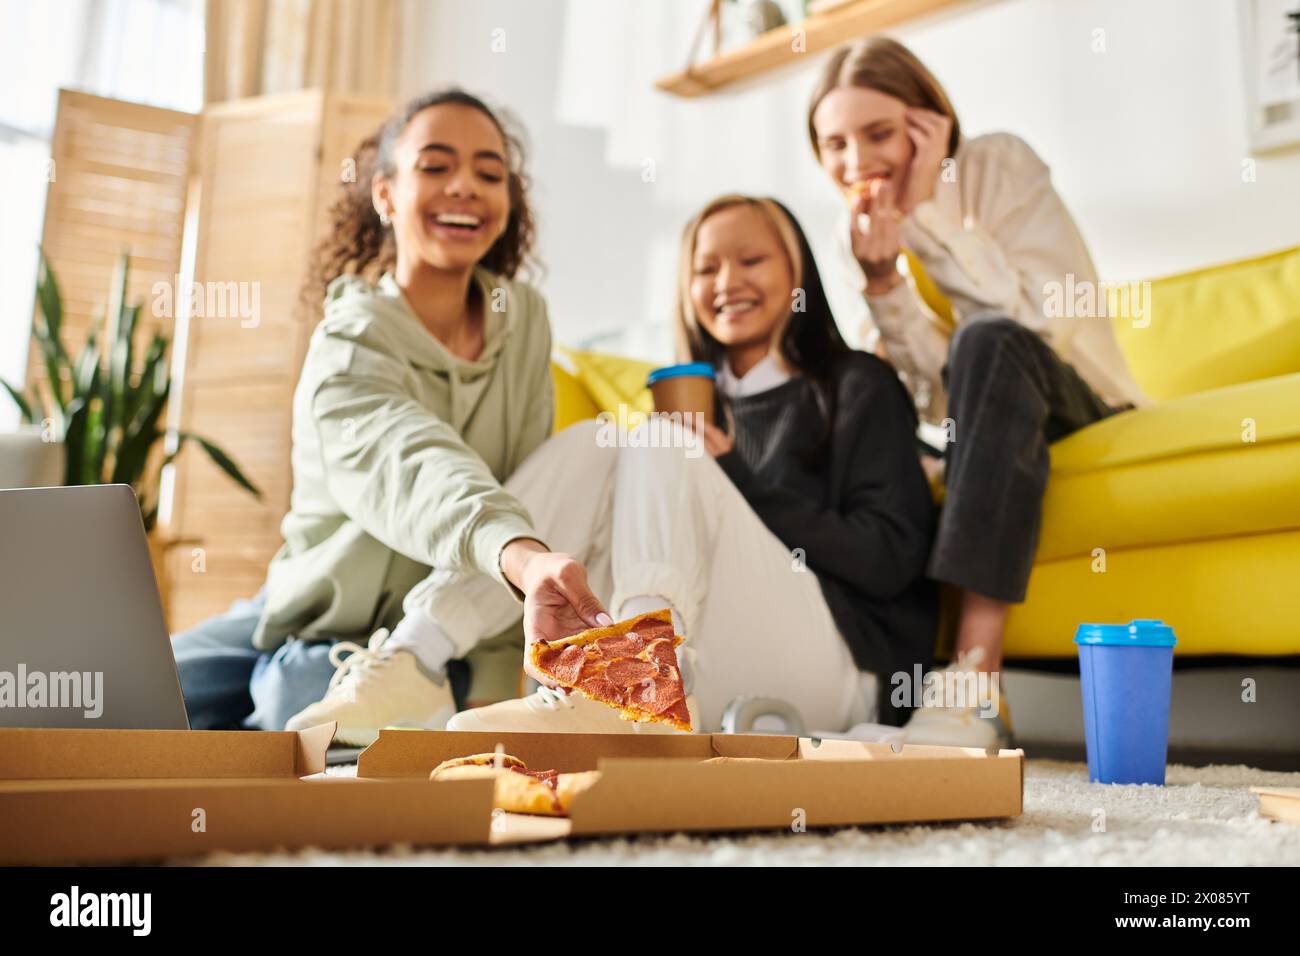 Verschiedene Teenager-Mädchen, die einen zwanglosen Treffpunkt genießen, auf dem Boden sitzen und gemeinsam Pizza-Scheiben genießen. Stockfoto